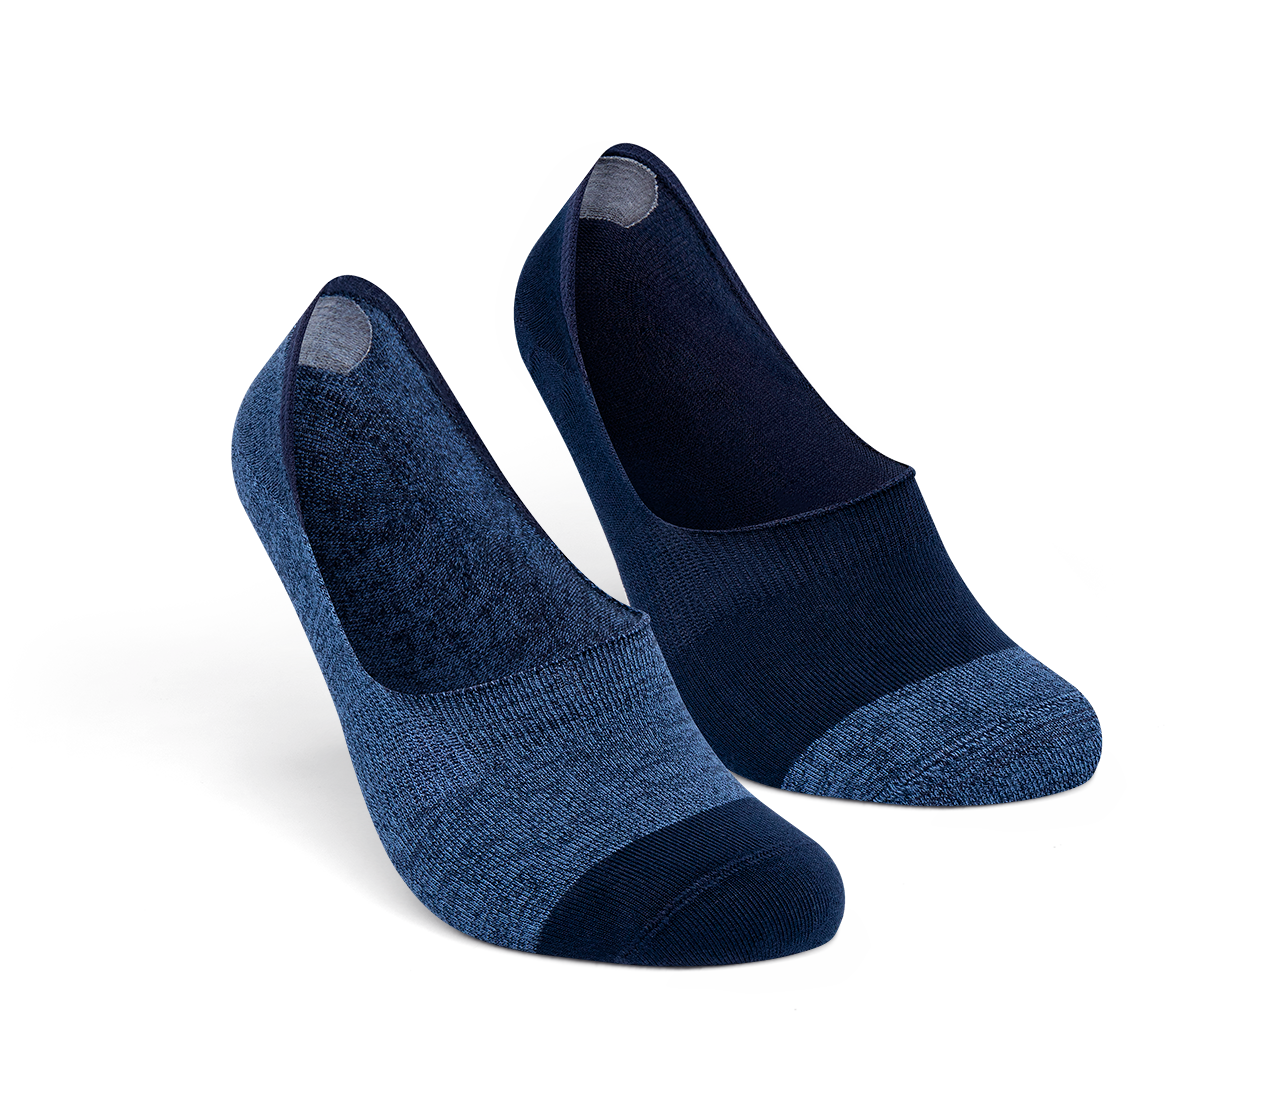 Las nuevas zapatillas de plataforma de Yuccs para chicas bajitas